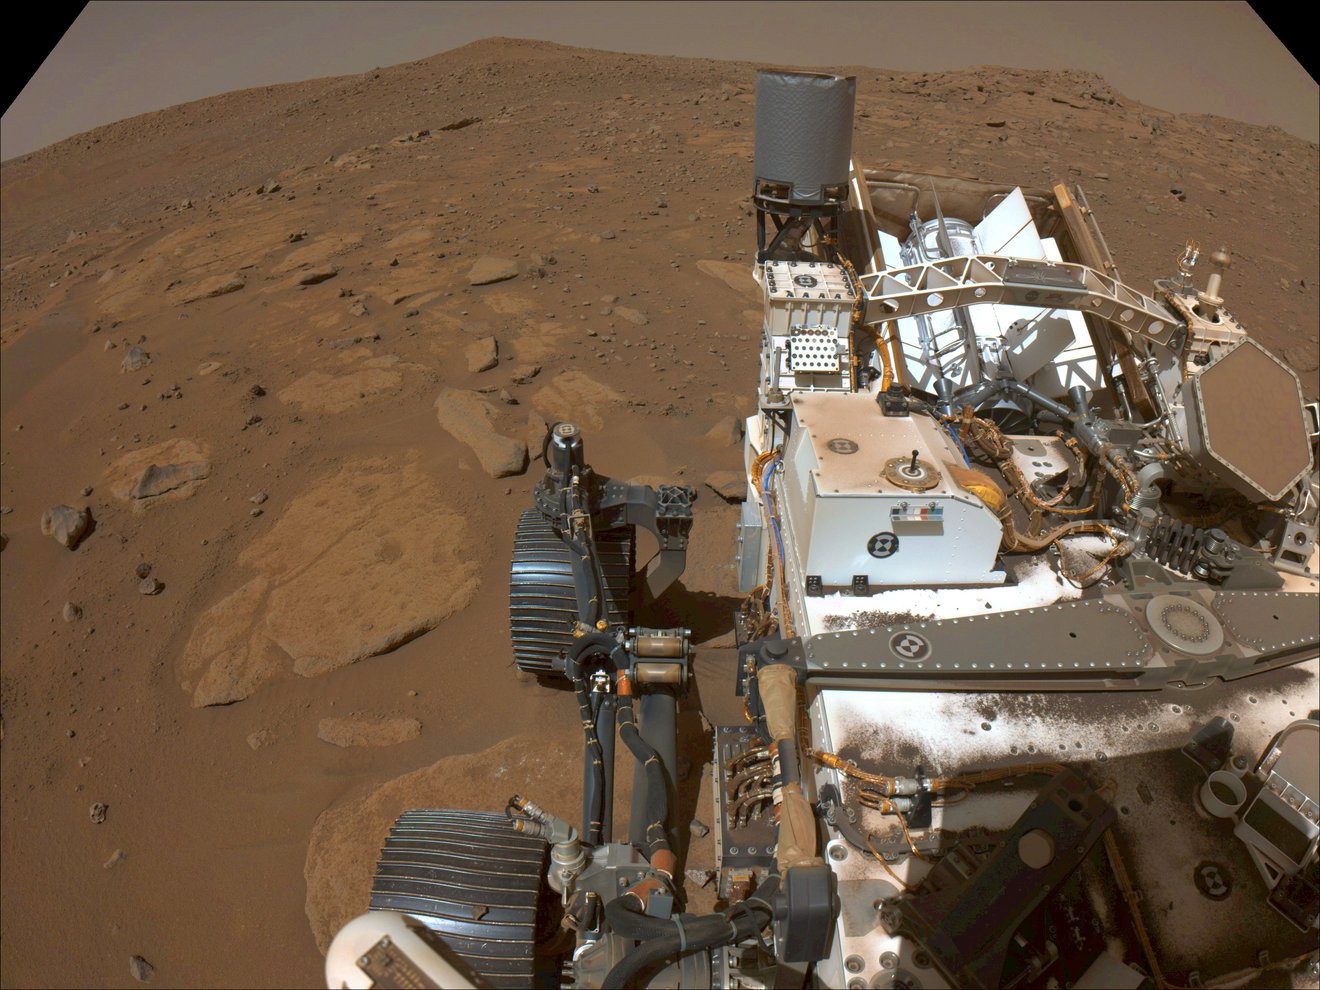 El rover Perseverance de la NASA capturó esta vista de la ubicación donde estará estacionado durante varias semanas durante la conjunción solar de Marte, un período en el que los ingenieros dejan de enviar comandos a las naves espaciales en el Planeta Rojo porque el Sol puede interferir con las señales de radio. Crédito: NASA/JPL-Caltech